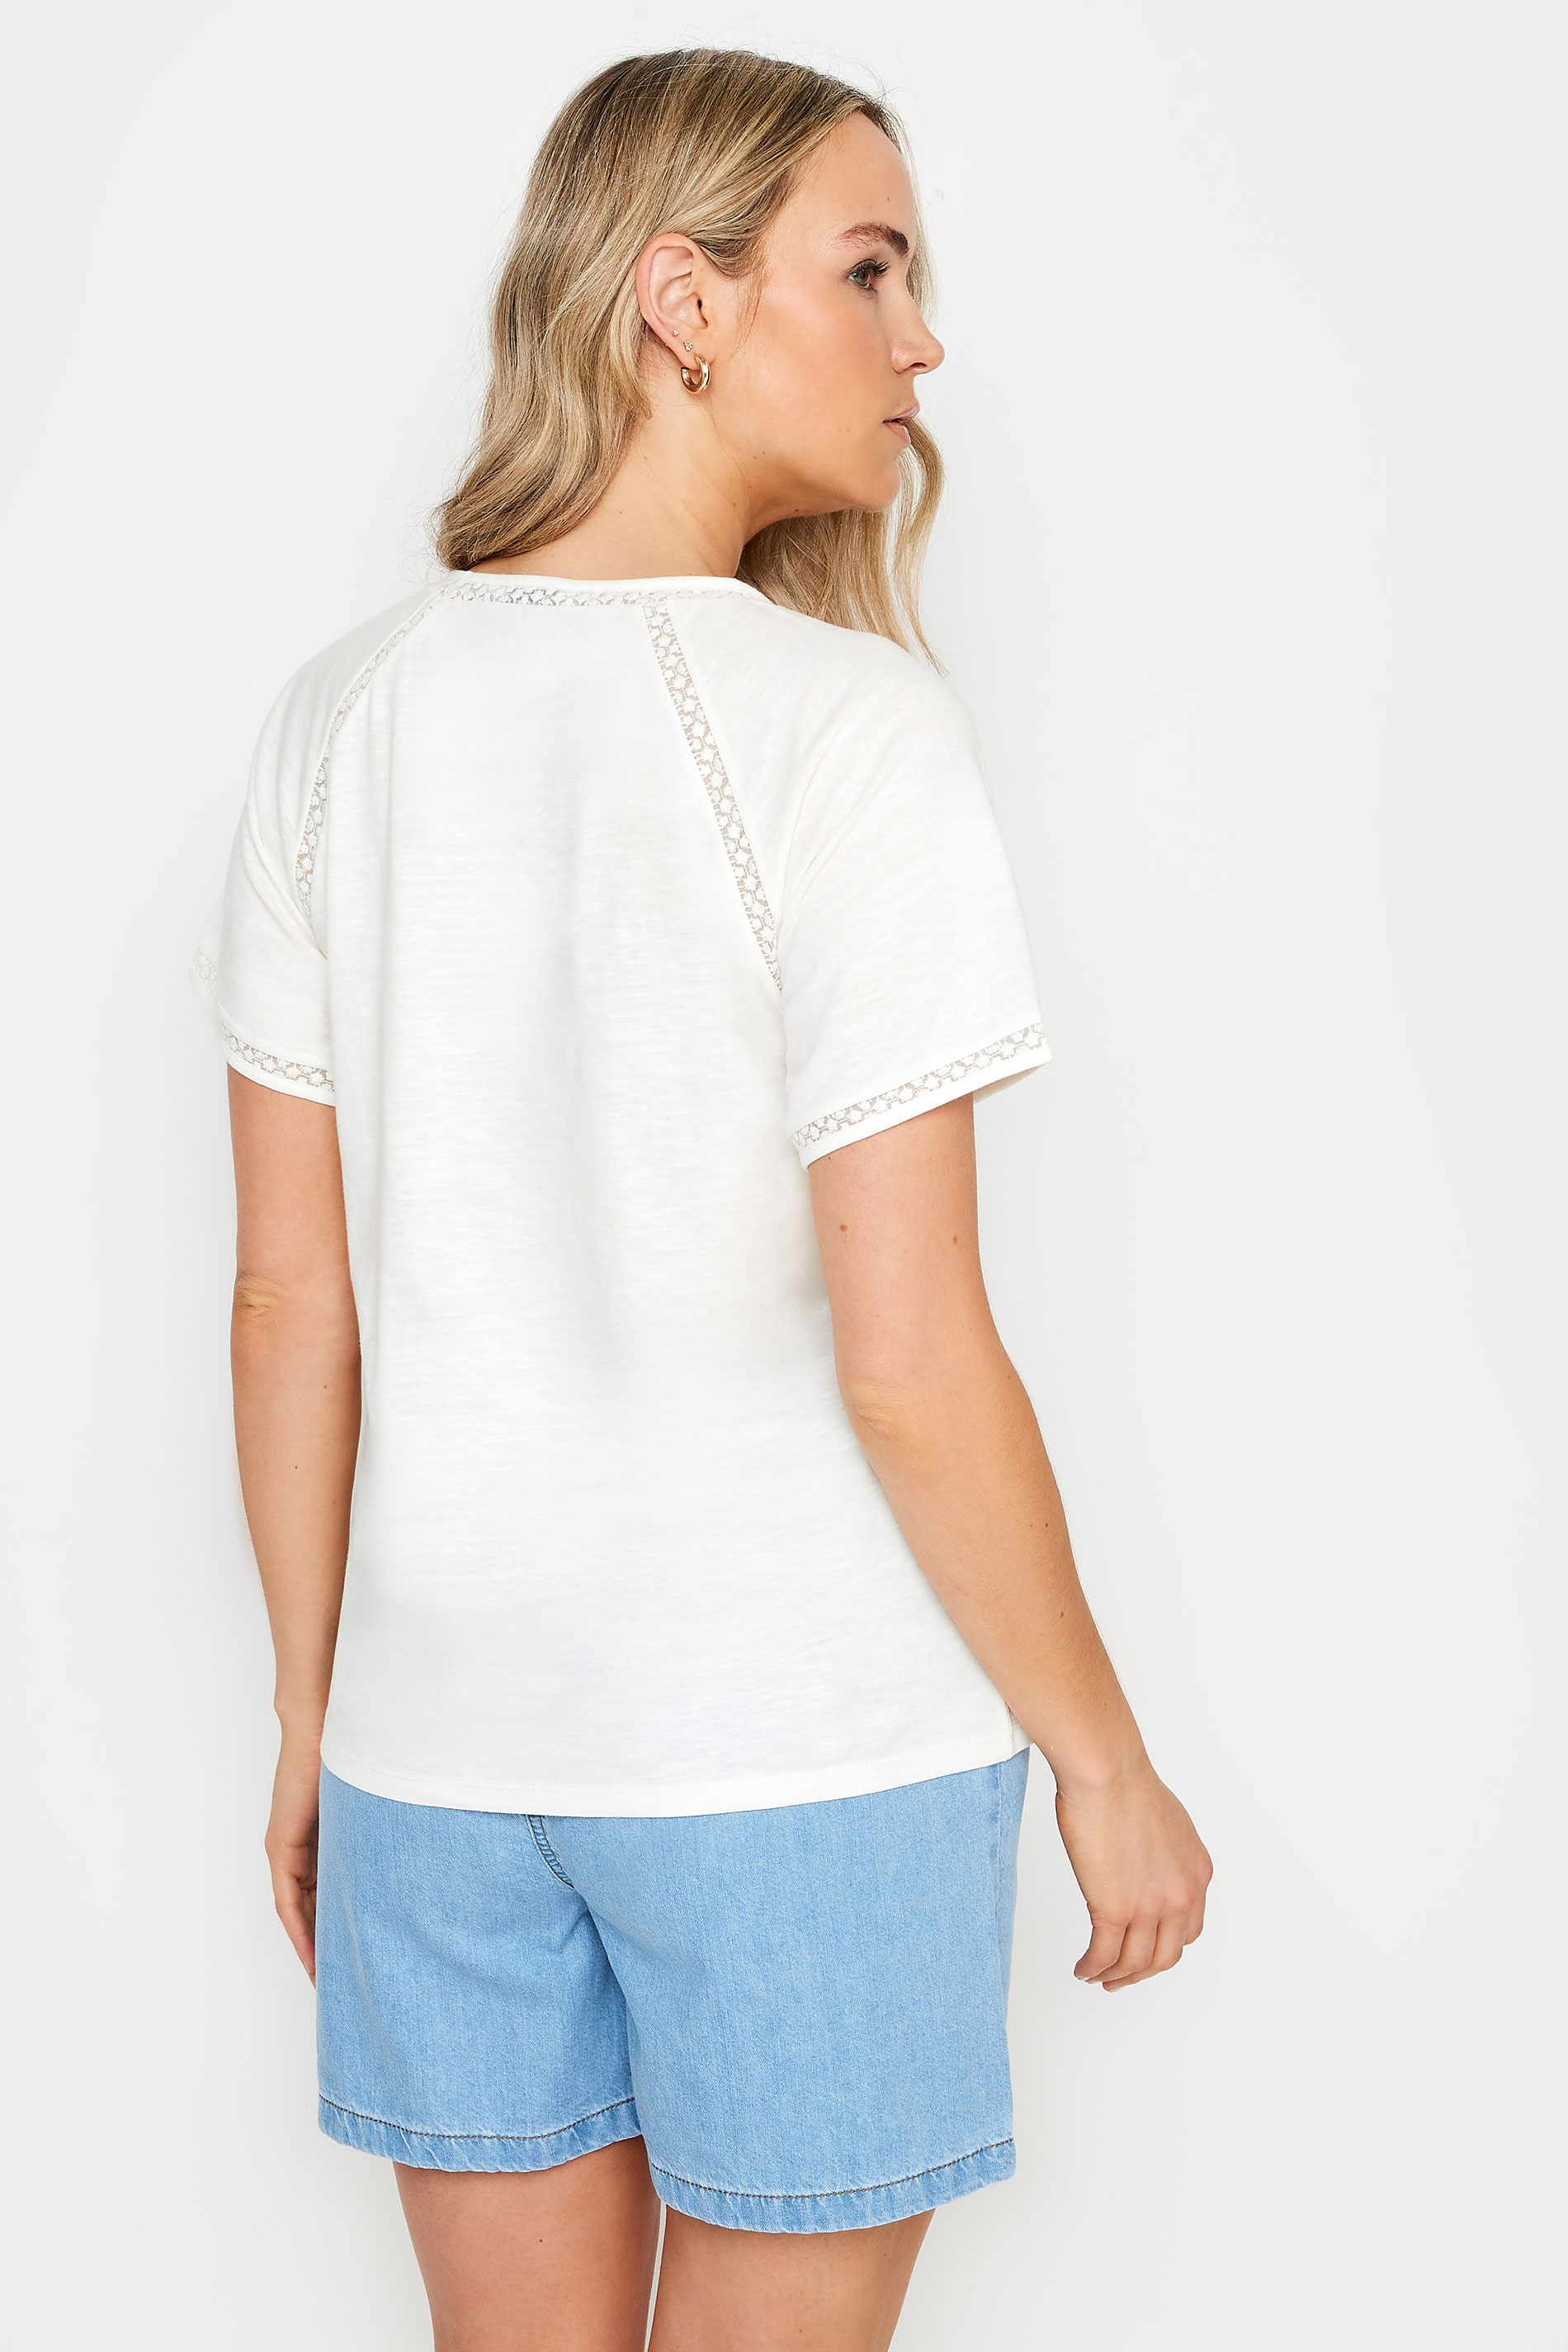 LTS Tall Women's Ivory White Crochet Detail T-Shirt | Long Tall Sally 3